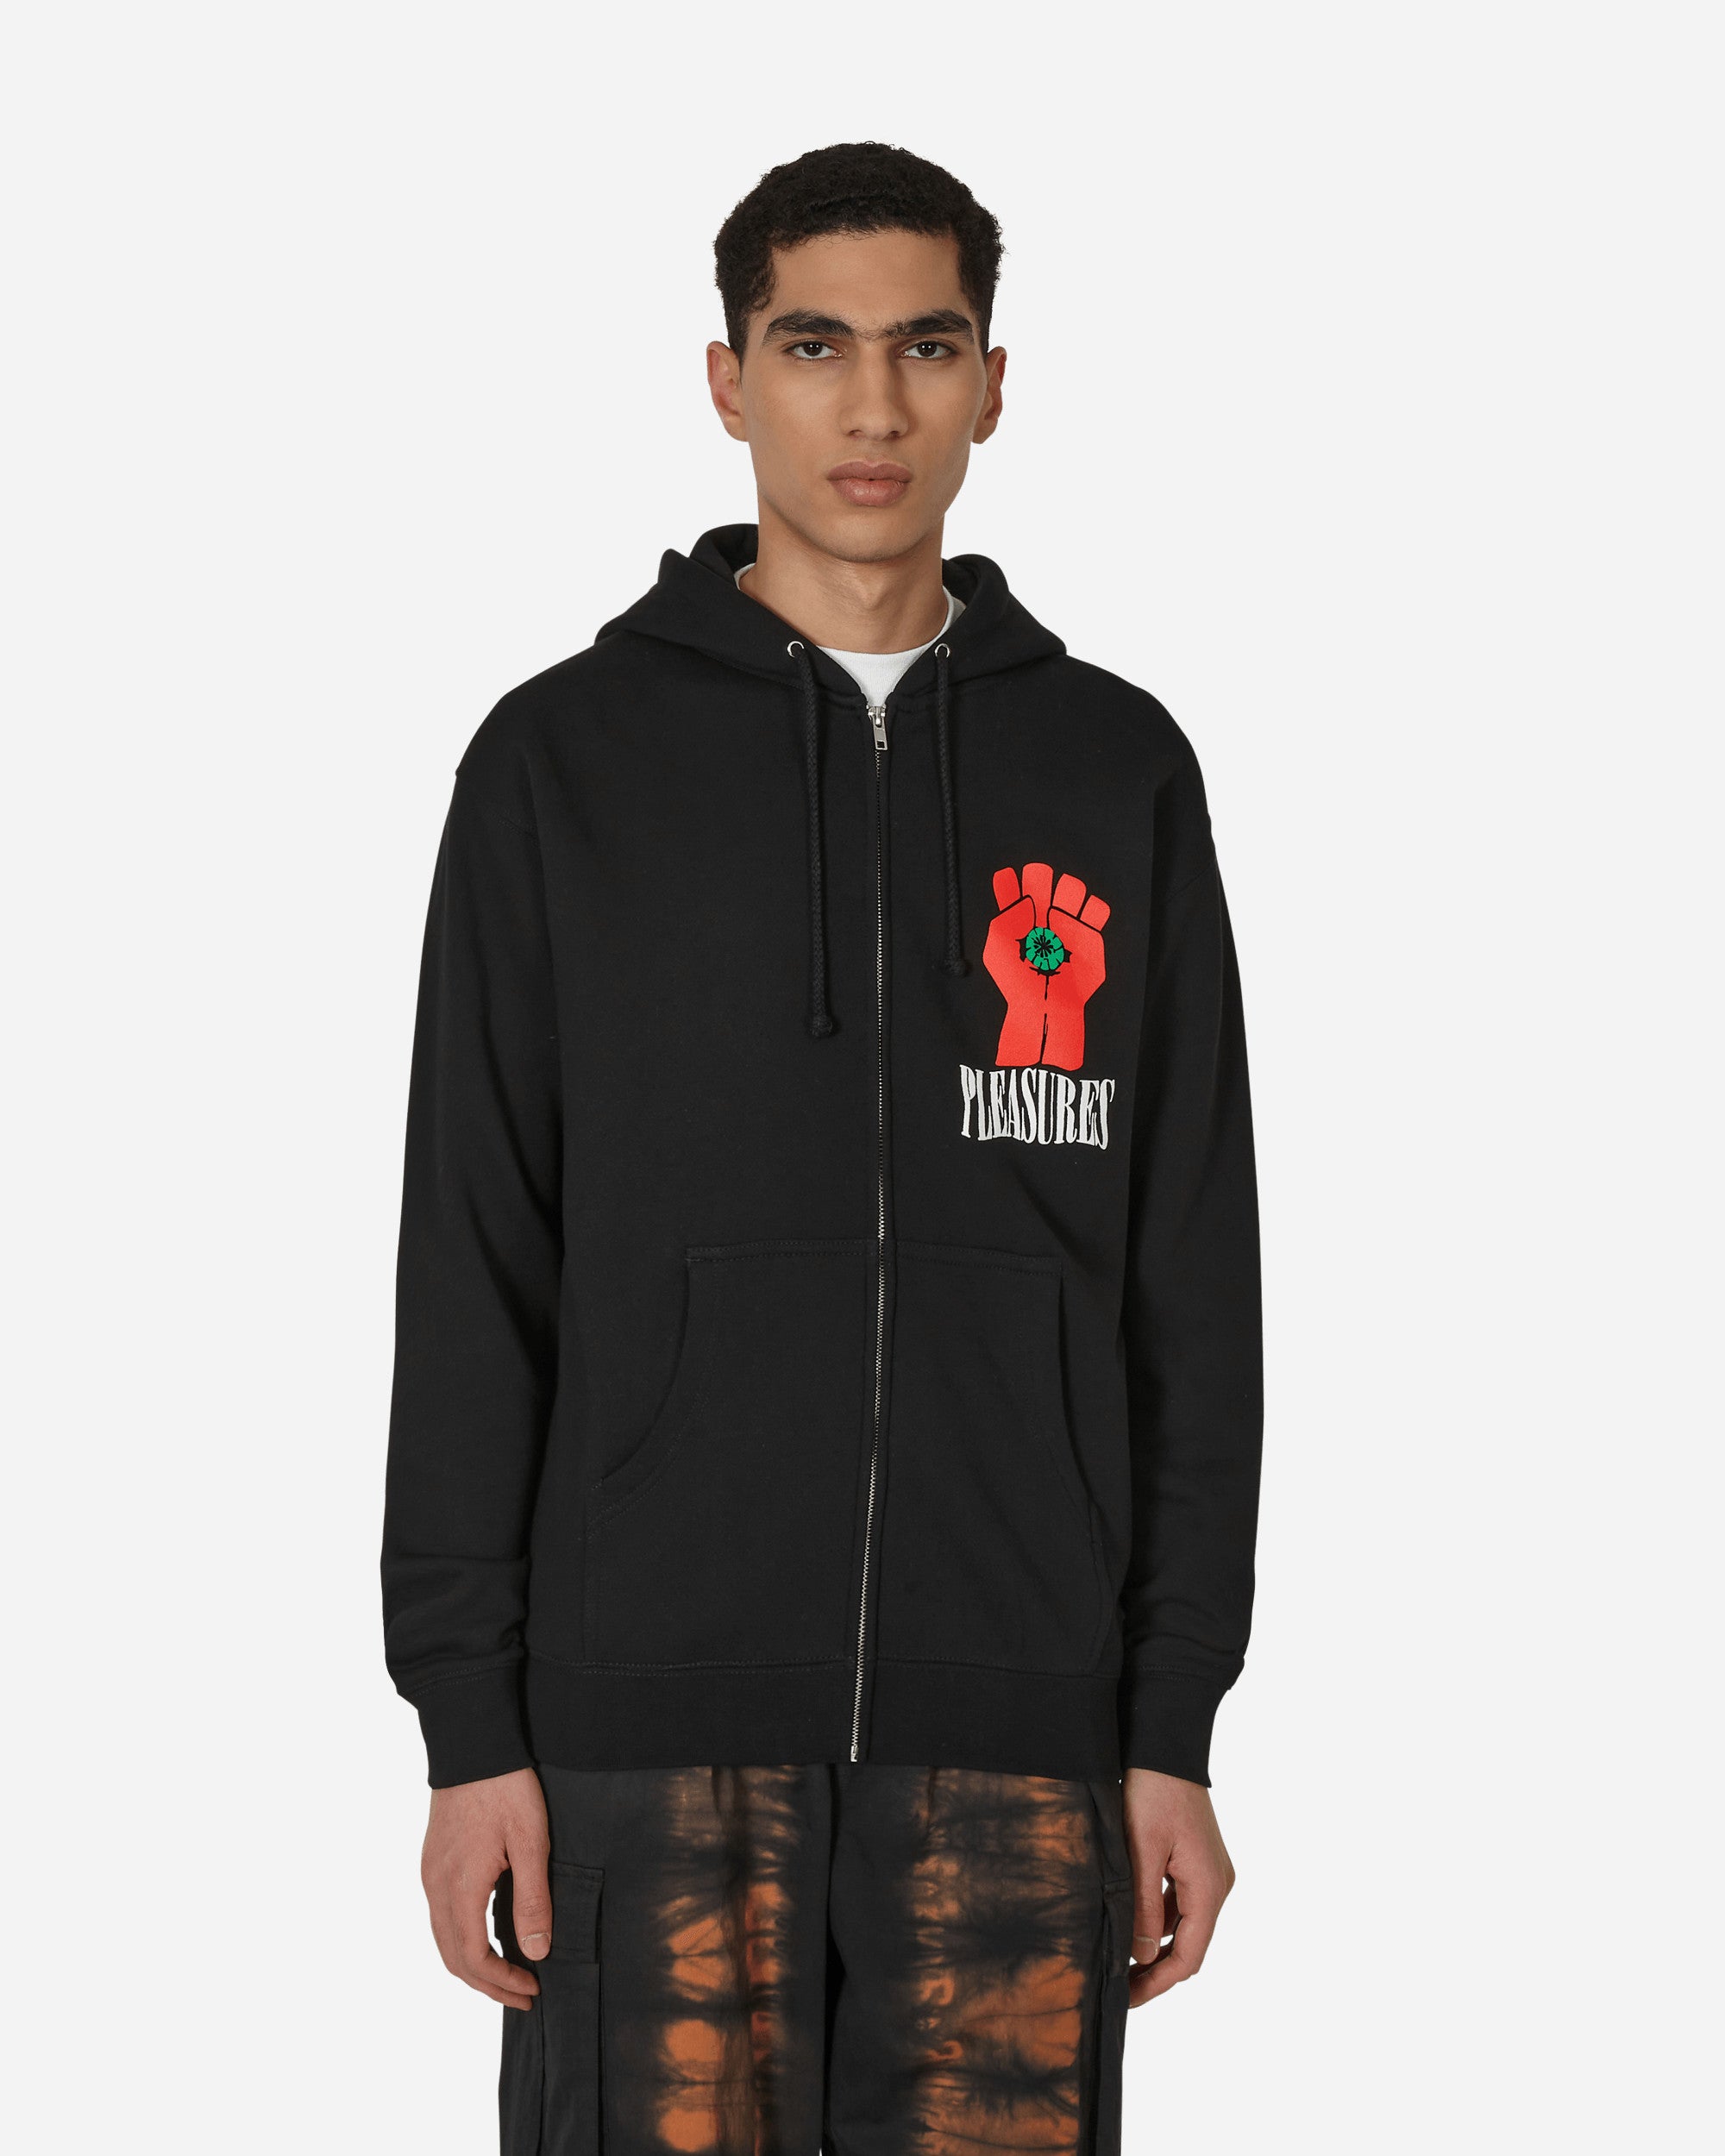 HST Graphic Zip Hooded Sweatshirt Black